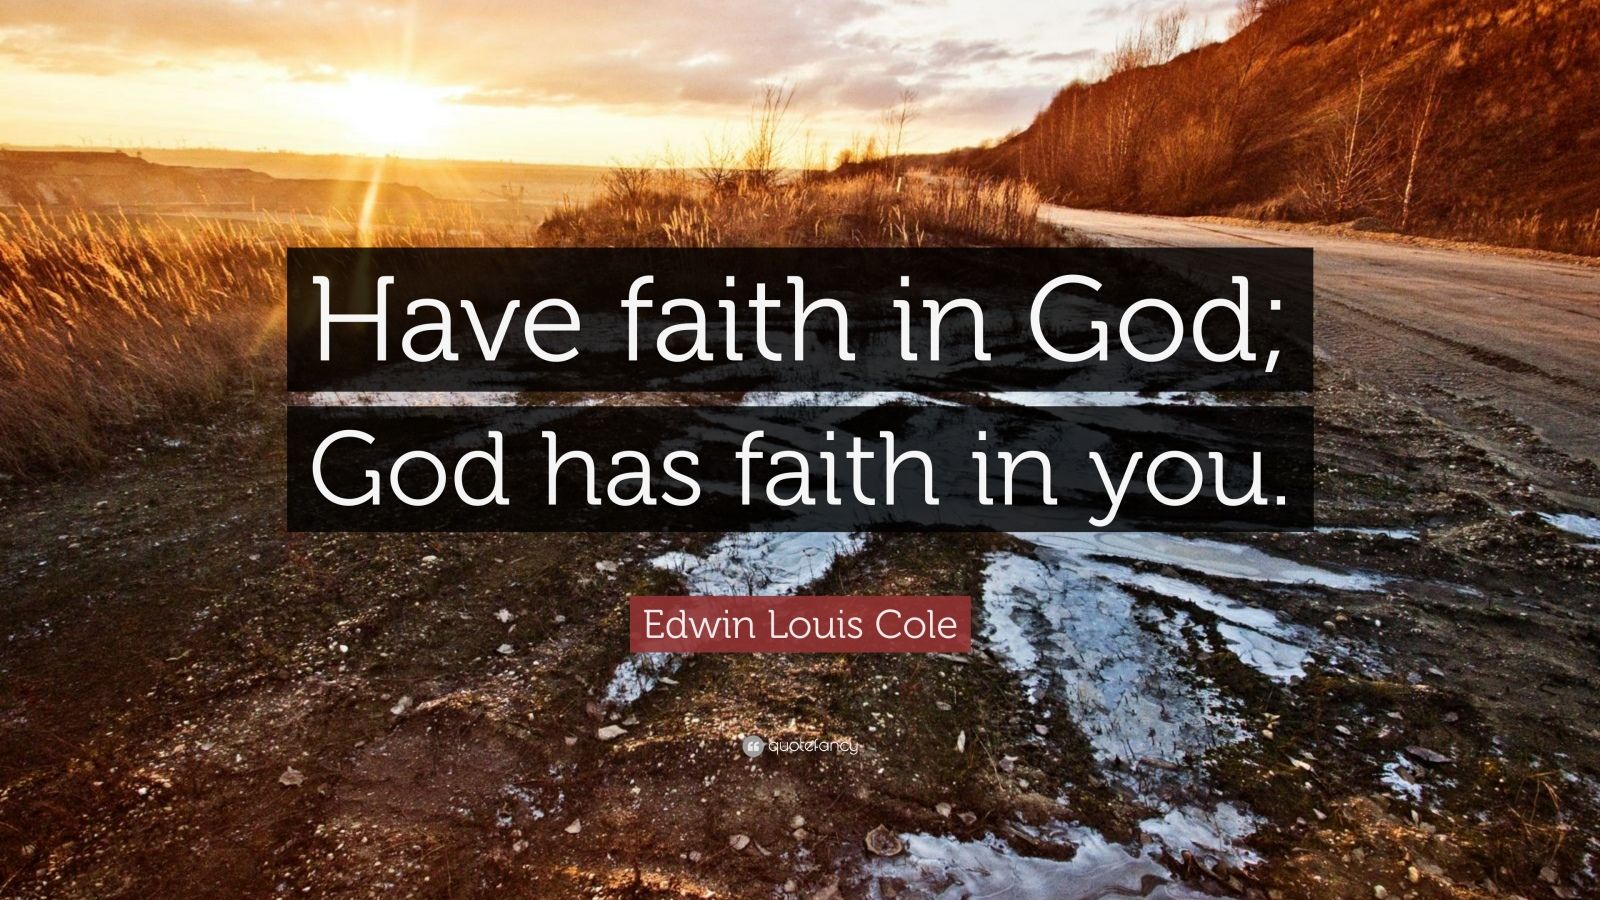 how deep is your faith in god essay